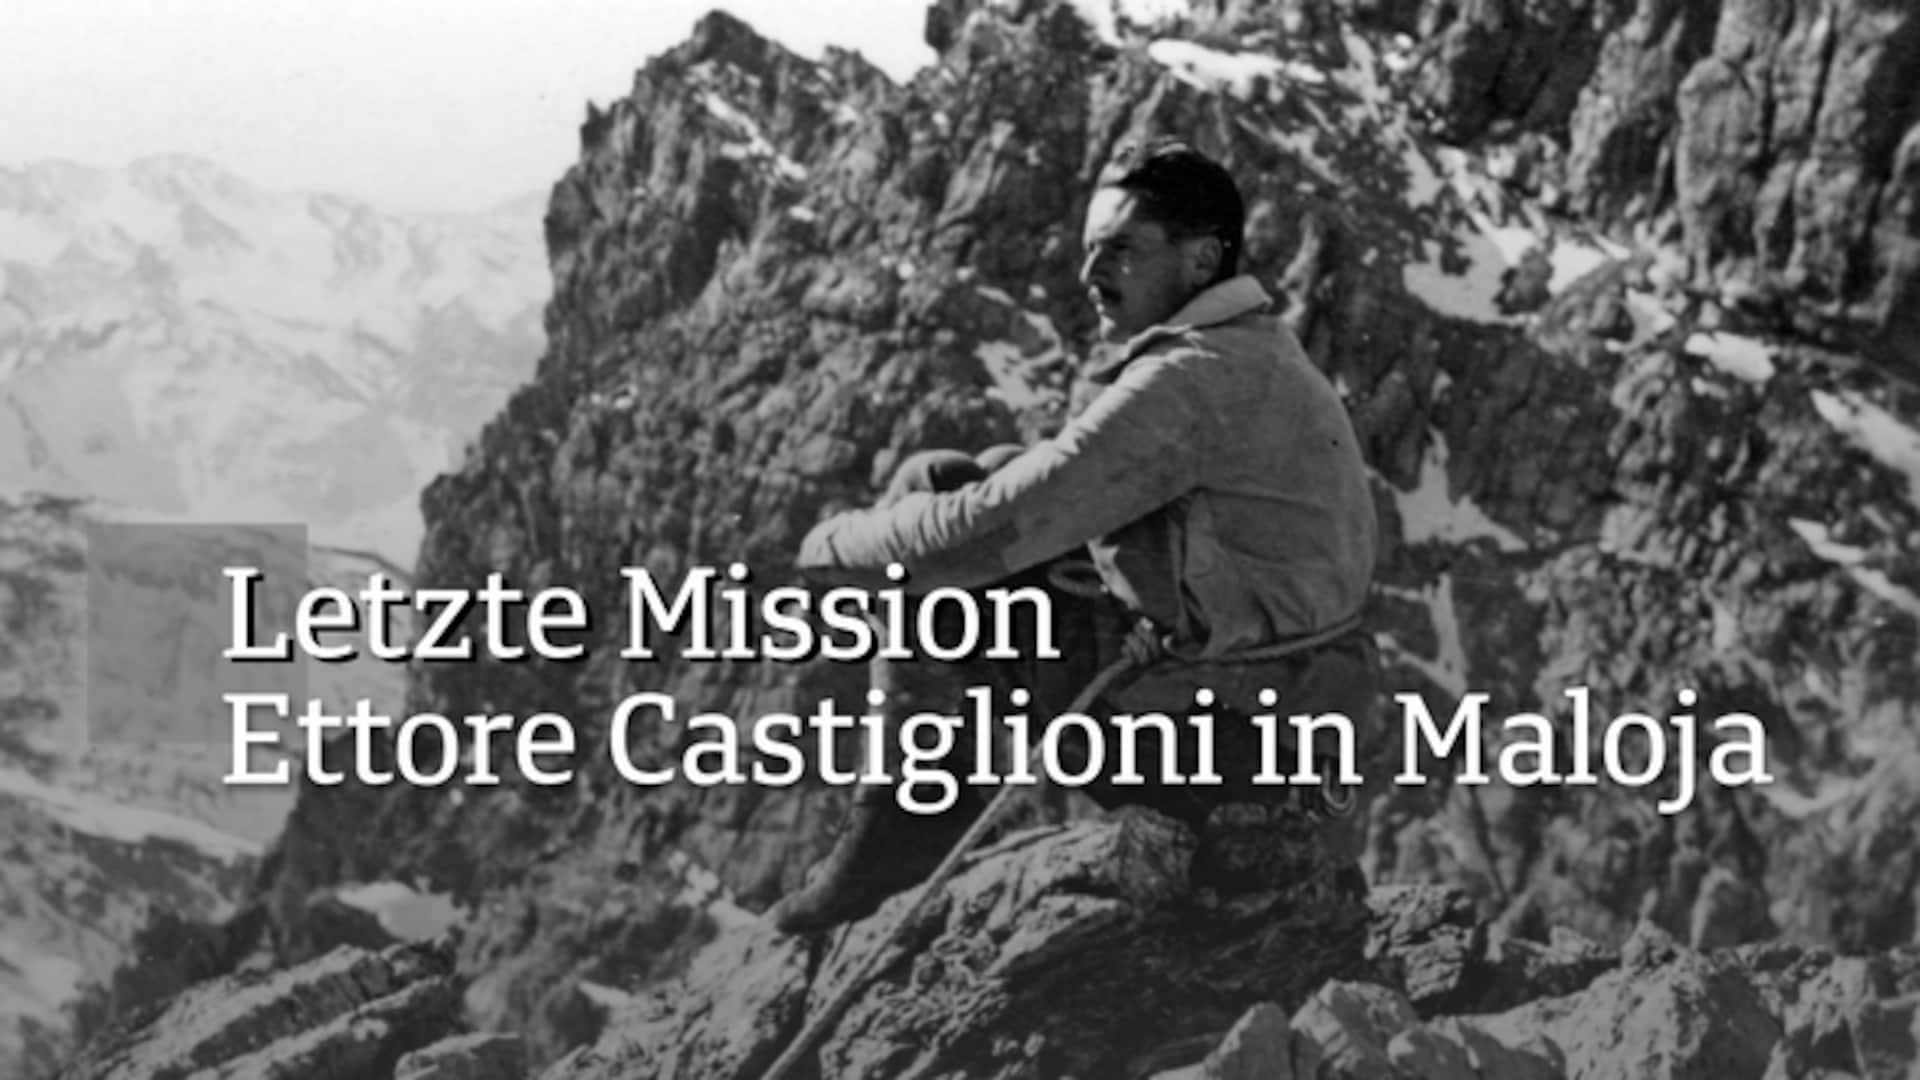 Letzte Mission - Ettore Castiglioni in Maloja